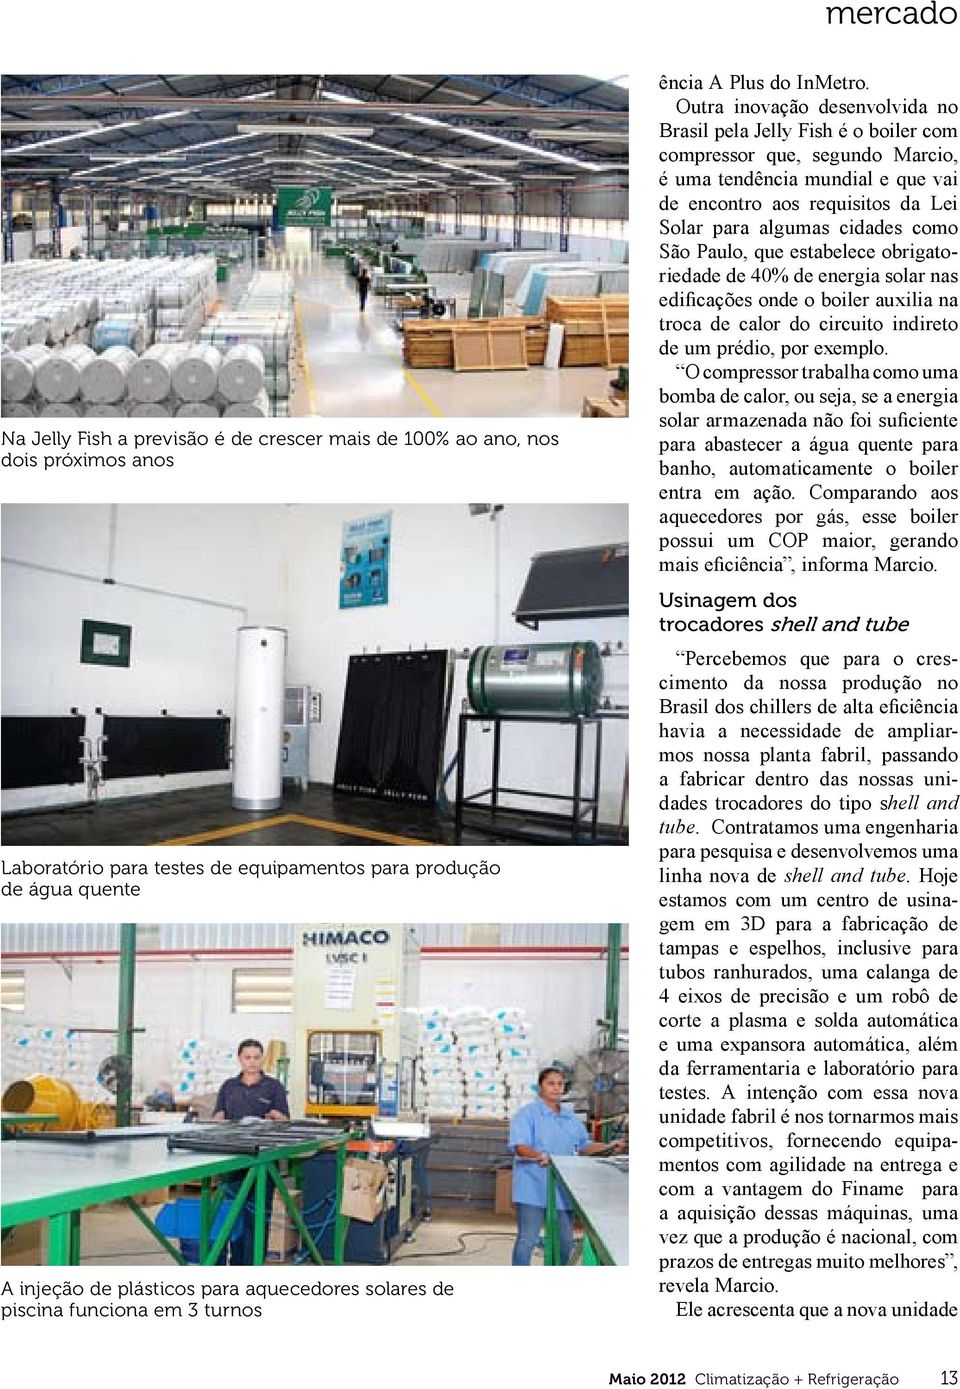 Outra inovação desenvolvida no Brasil pela Jelly Fish é o boiler com compressor que, segundo Marcio, é uma tendência mundial e que vai de encontro aos requisitos da Lei Solar para algumas cidades